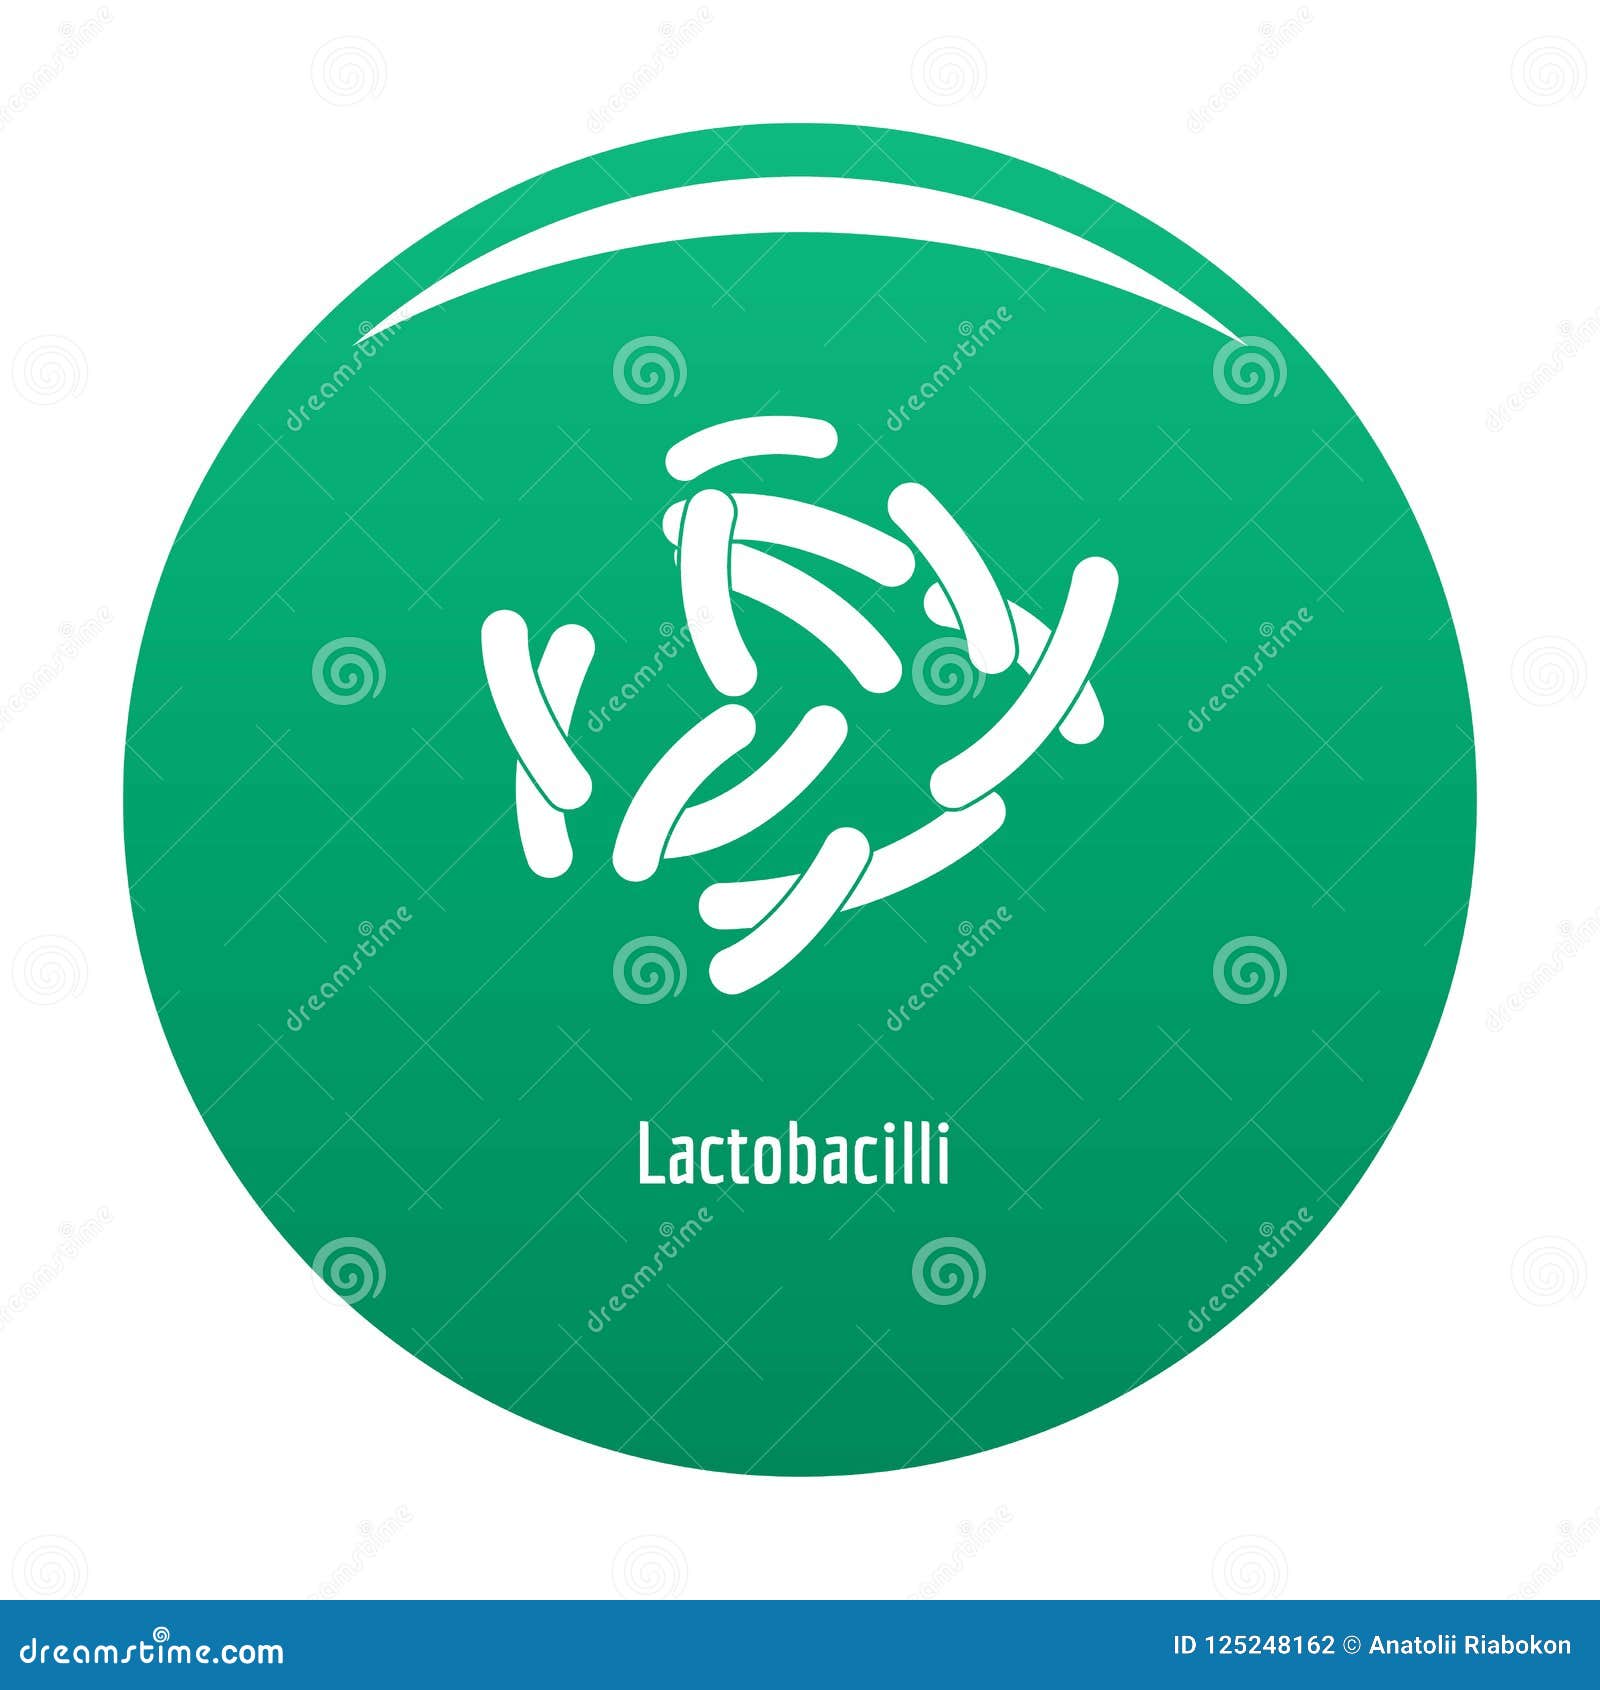 lactobacilli icon  green